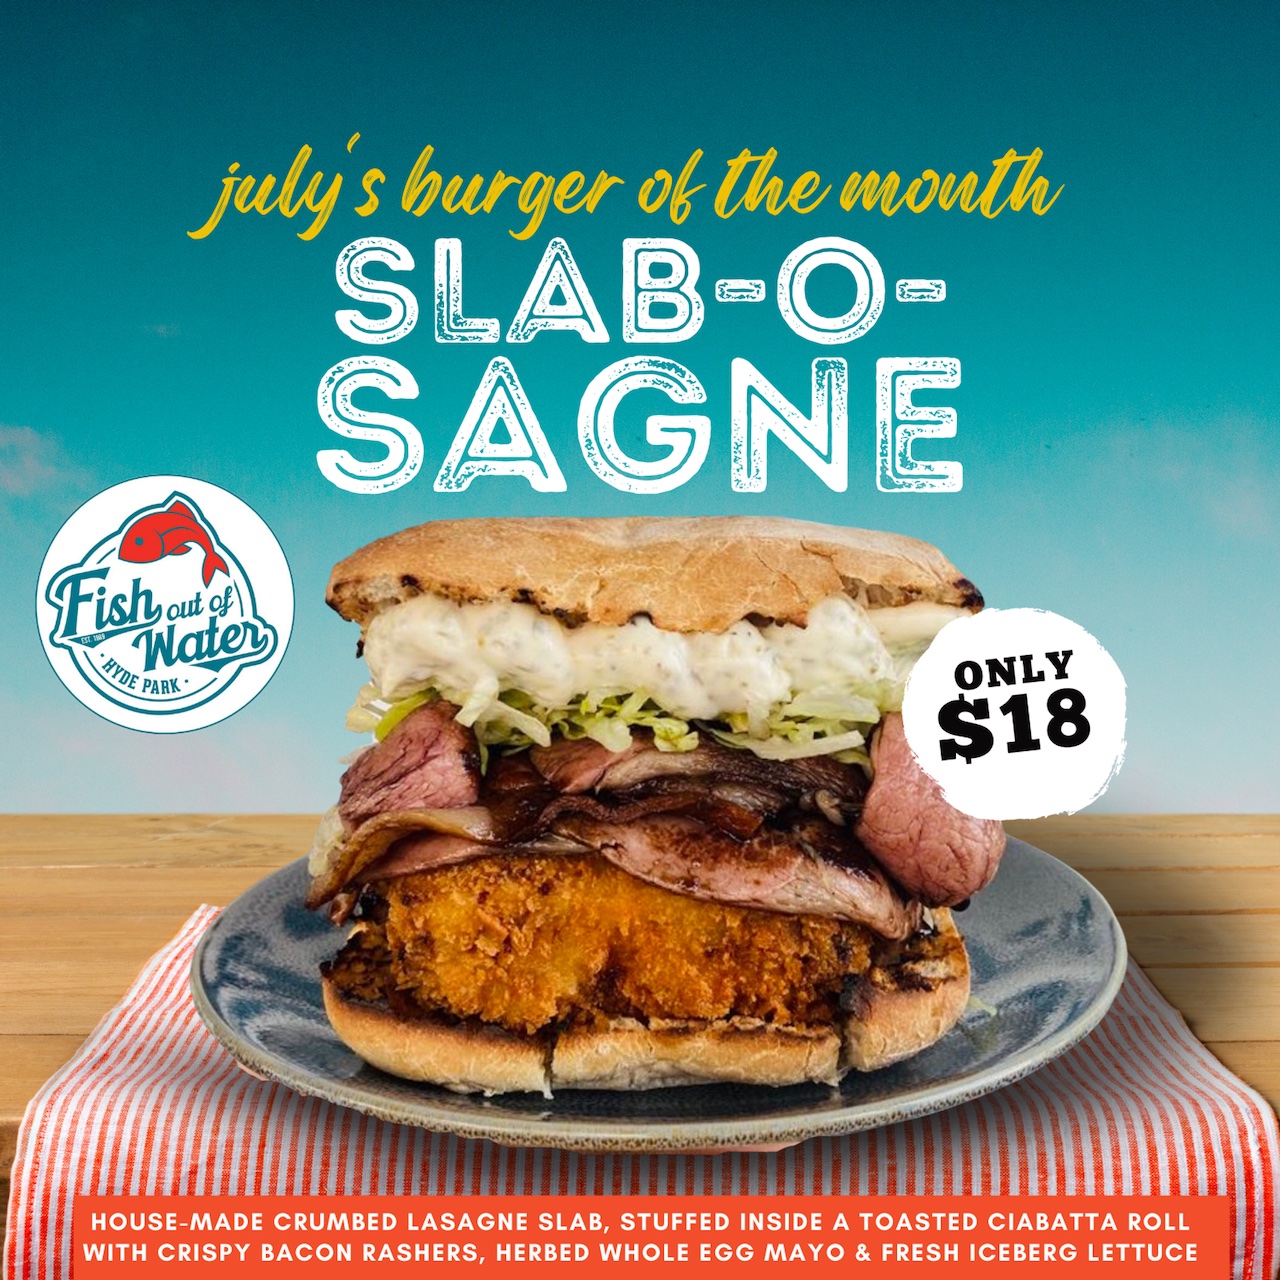 July burger, SLAB-O-SAGNE